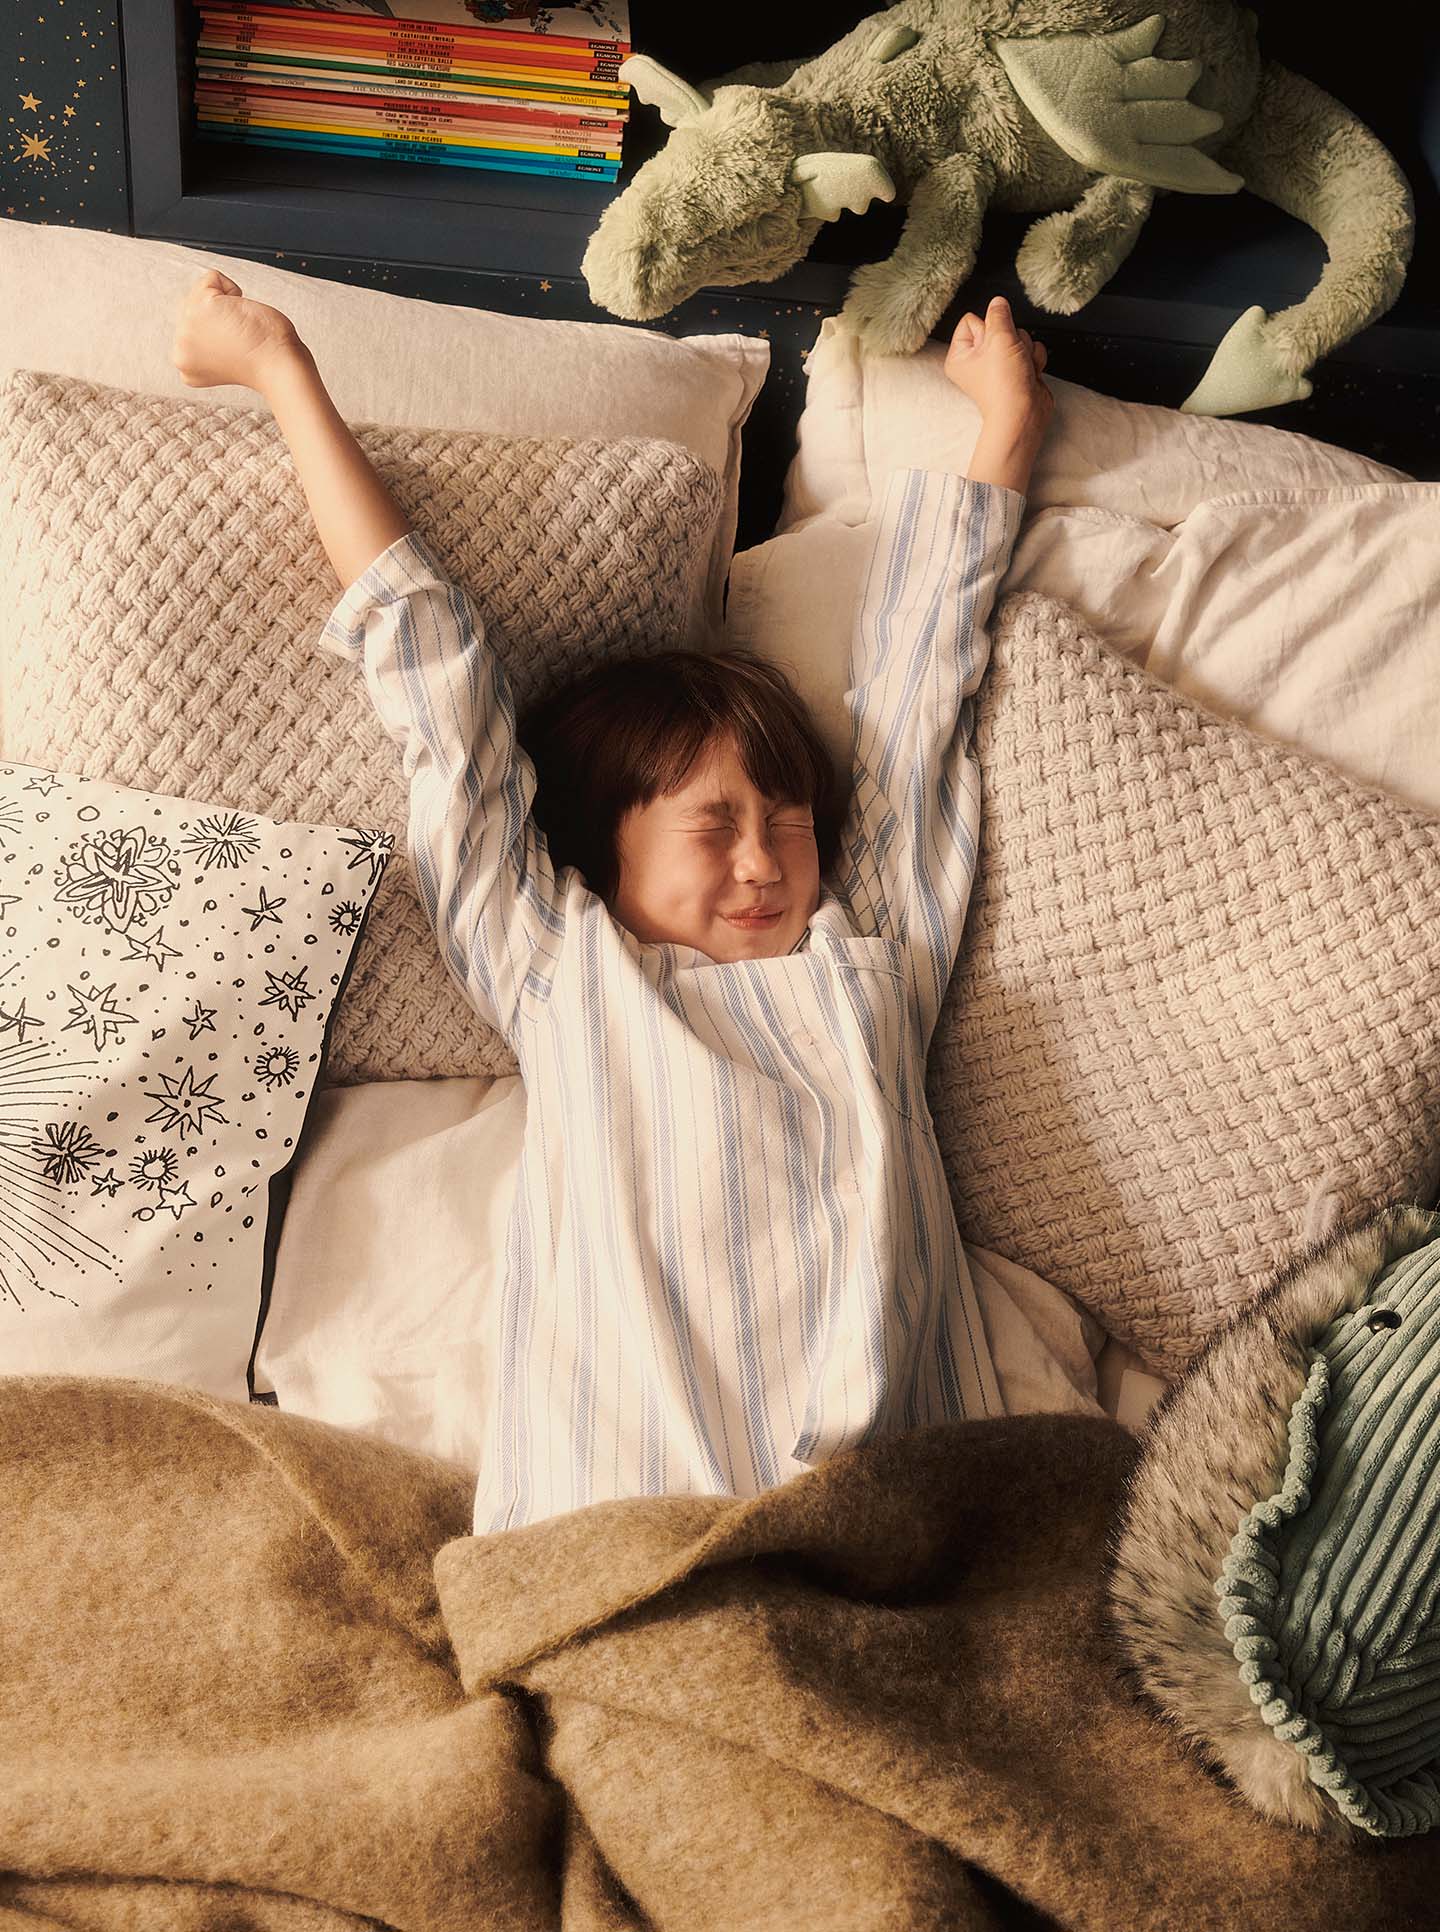 Boy stretching awake in bed